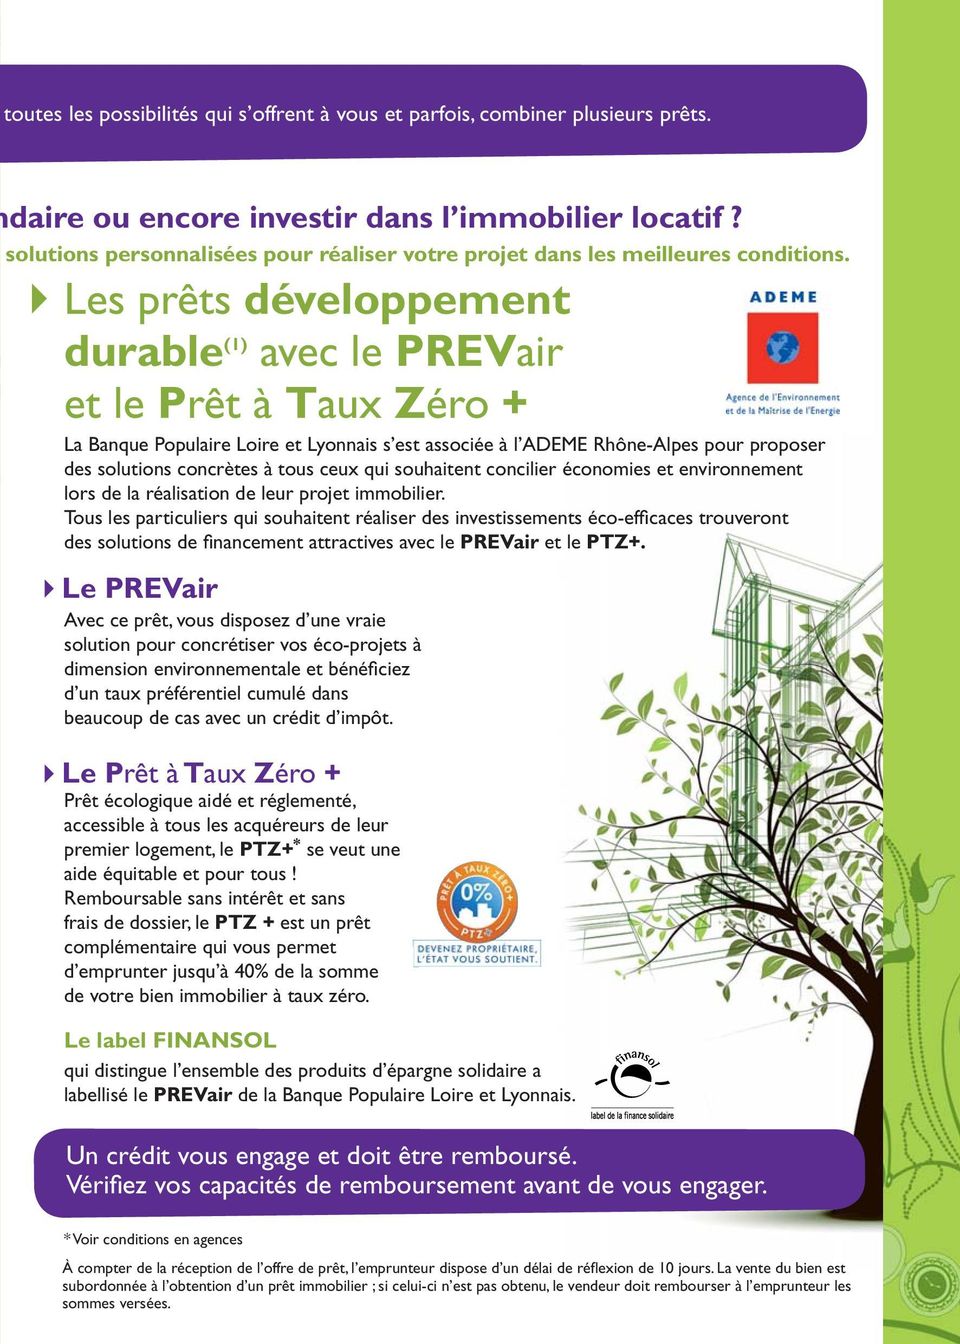 Les prêts développement durable (1) avec le PREVair et le Prêt à Taux Zéro + La Banque Populaire Loire et Lyonnais s est associée à l ADEME Rhône-Alpes pour proposer des solutions concrètes à tous